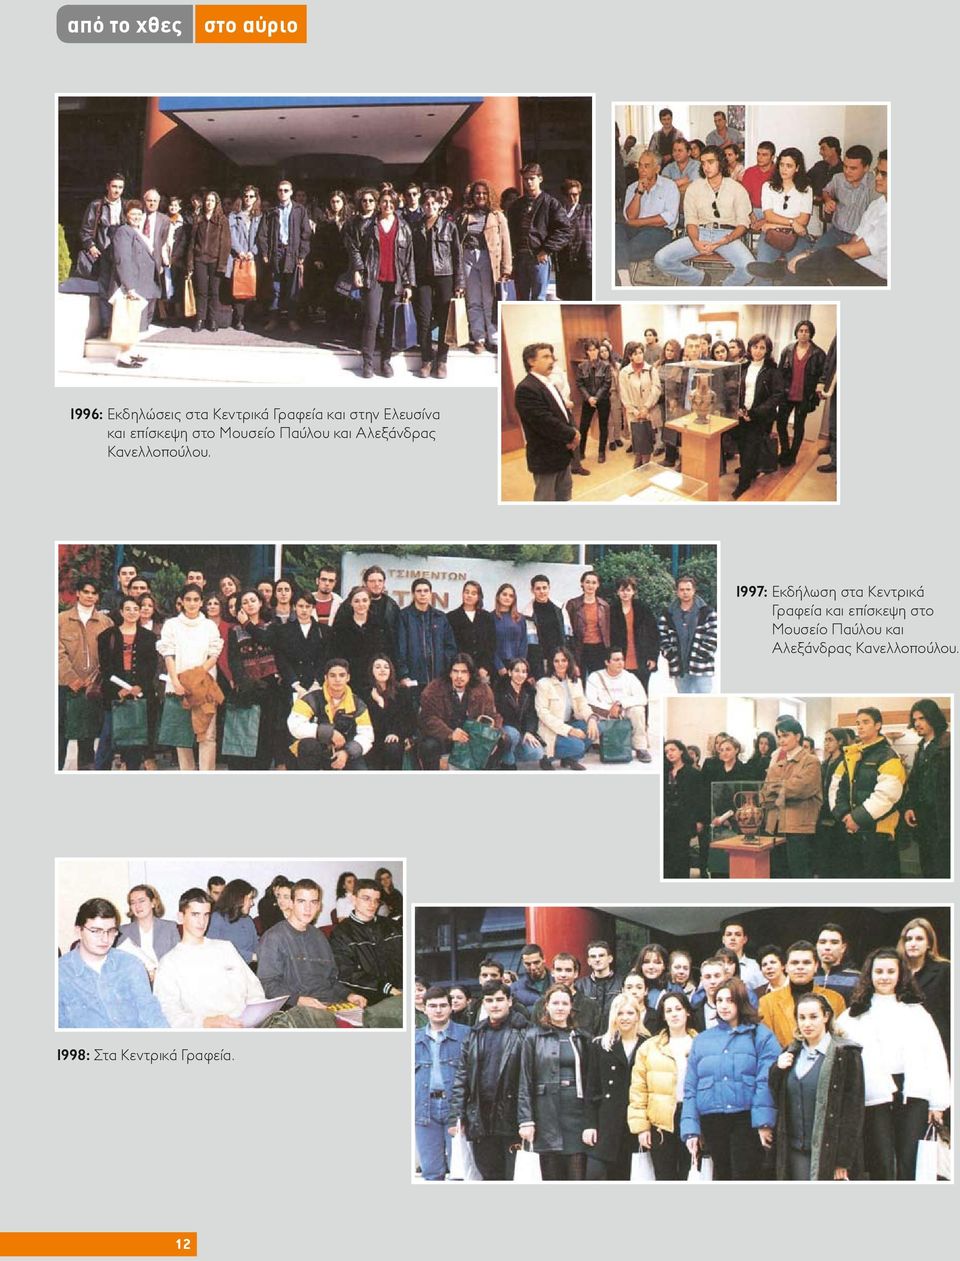 1997: Εκδήλωση στα Κεντρικά Γραφεία και  1998: Στα Κεντρικά